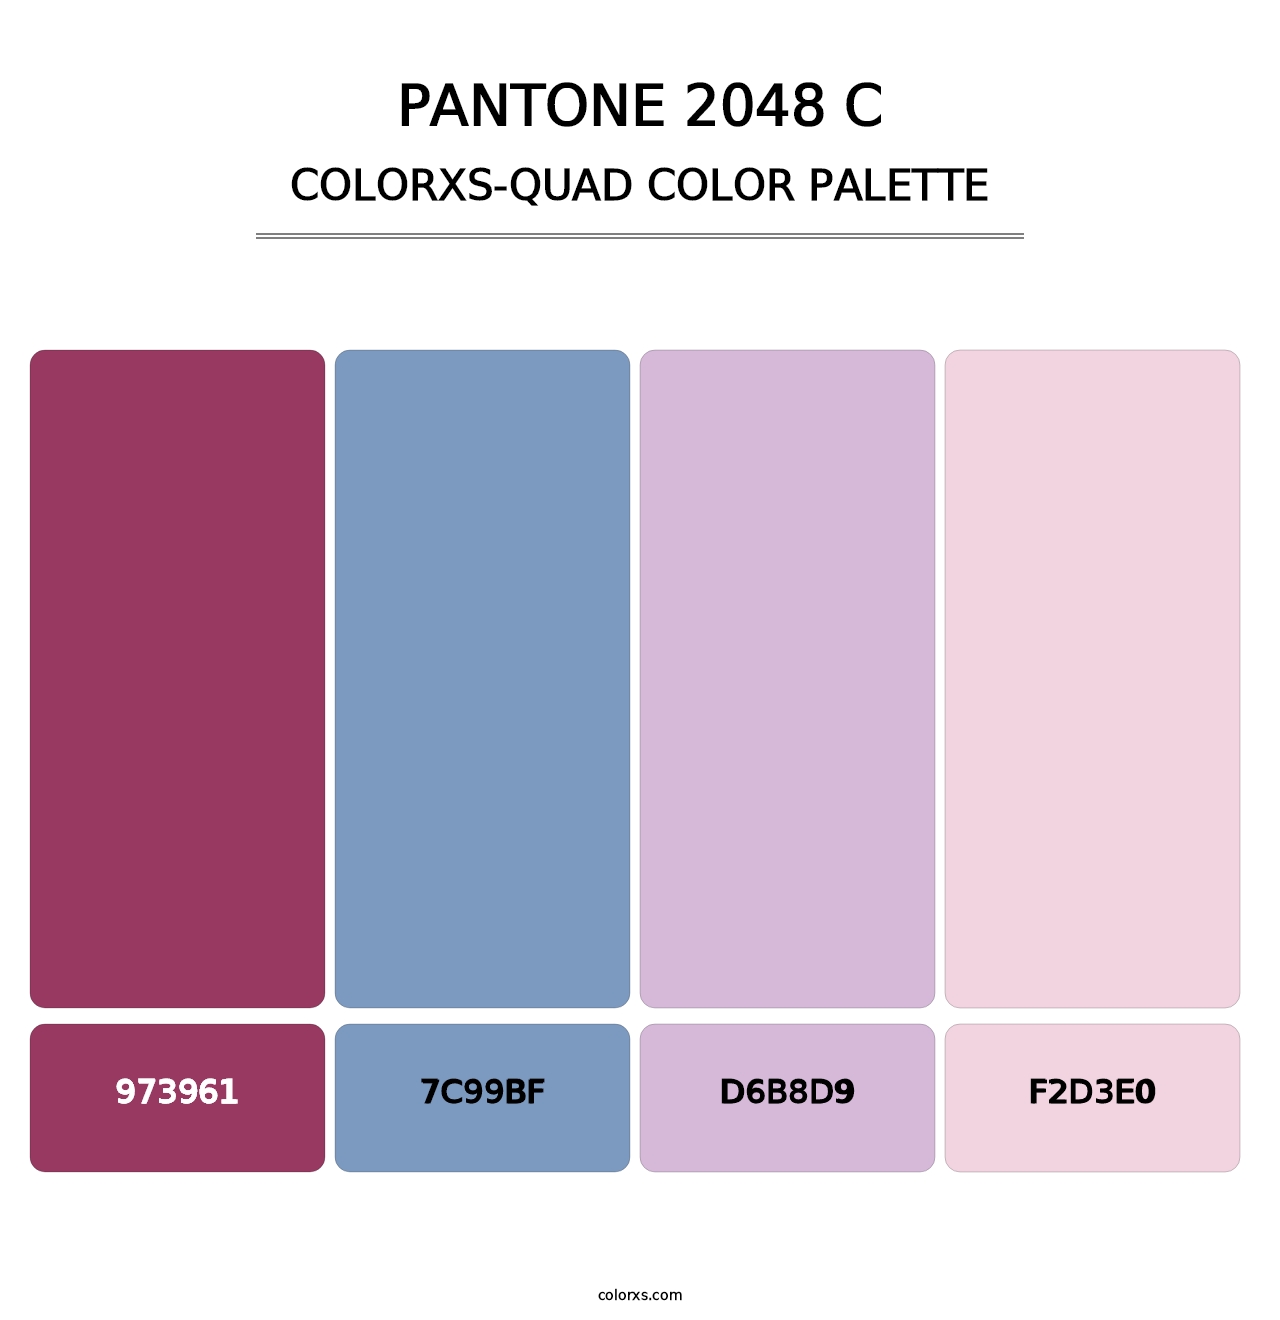 PANTONE 2048 C - Colorxs Quad Palette